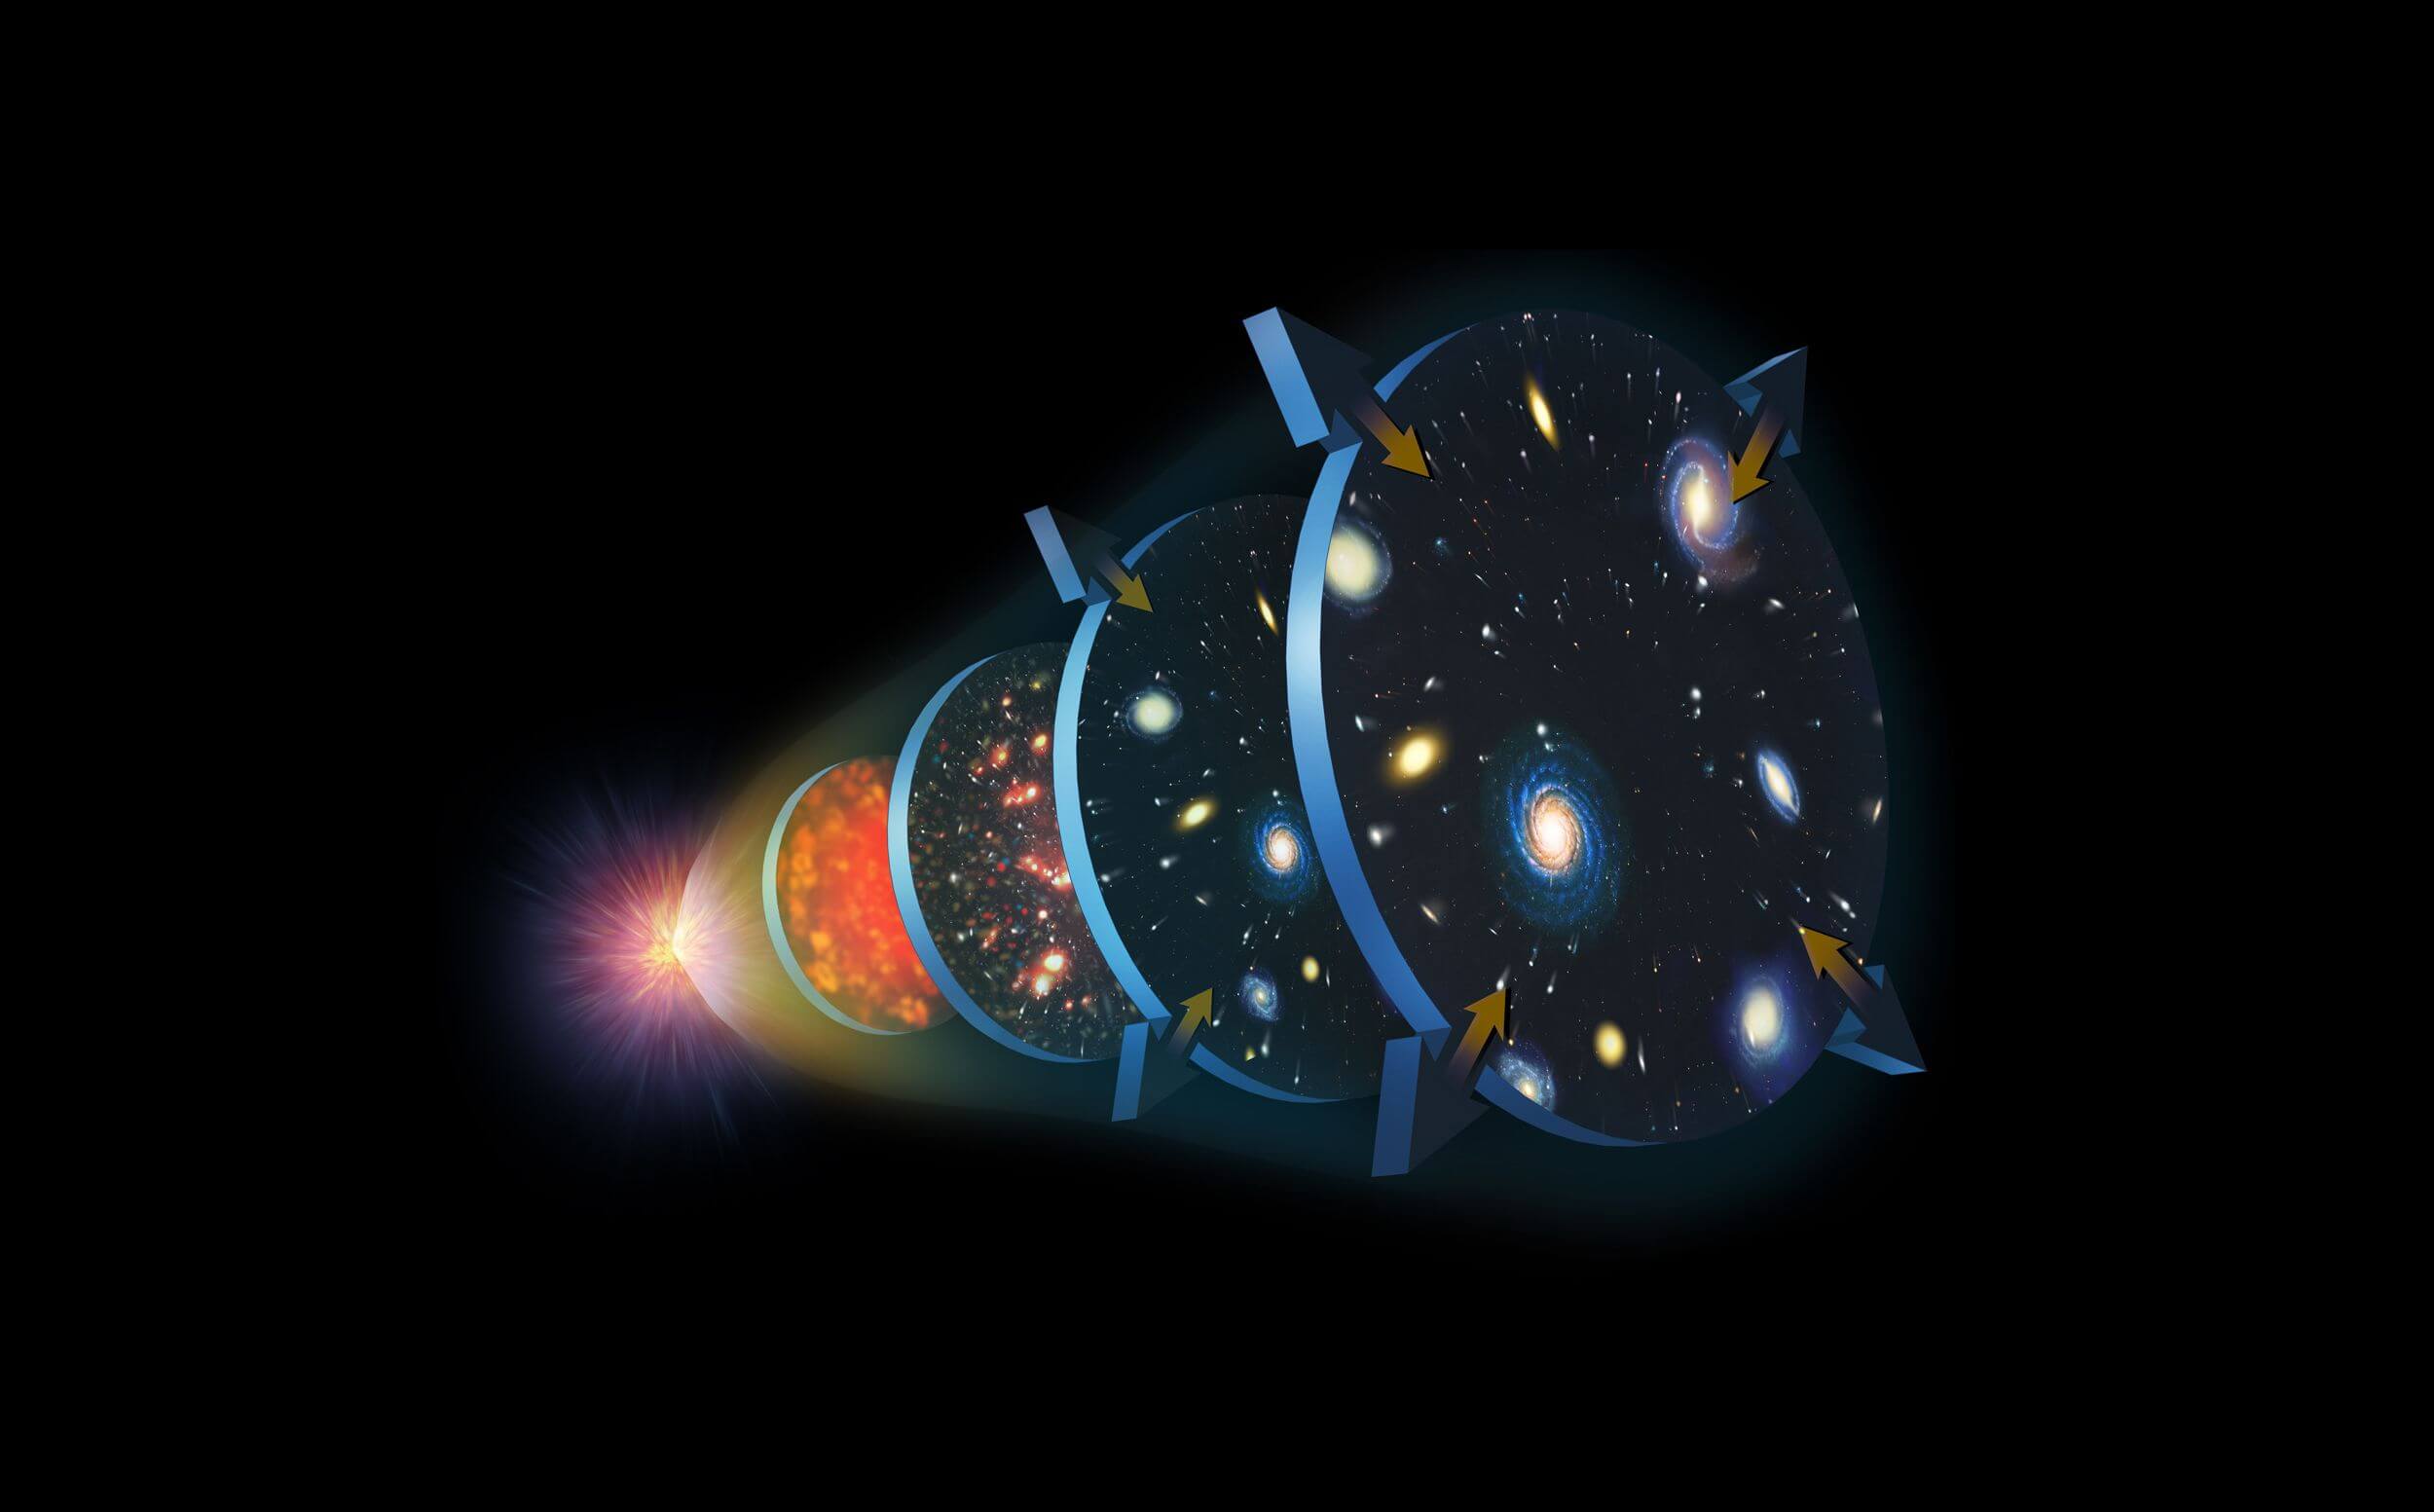 В начале времен. Наиболее обоснованная теория происхождения нашей Вселенной гласит, что она родилась в процессе Большого взрыва. Фото.